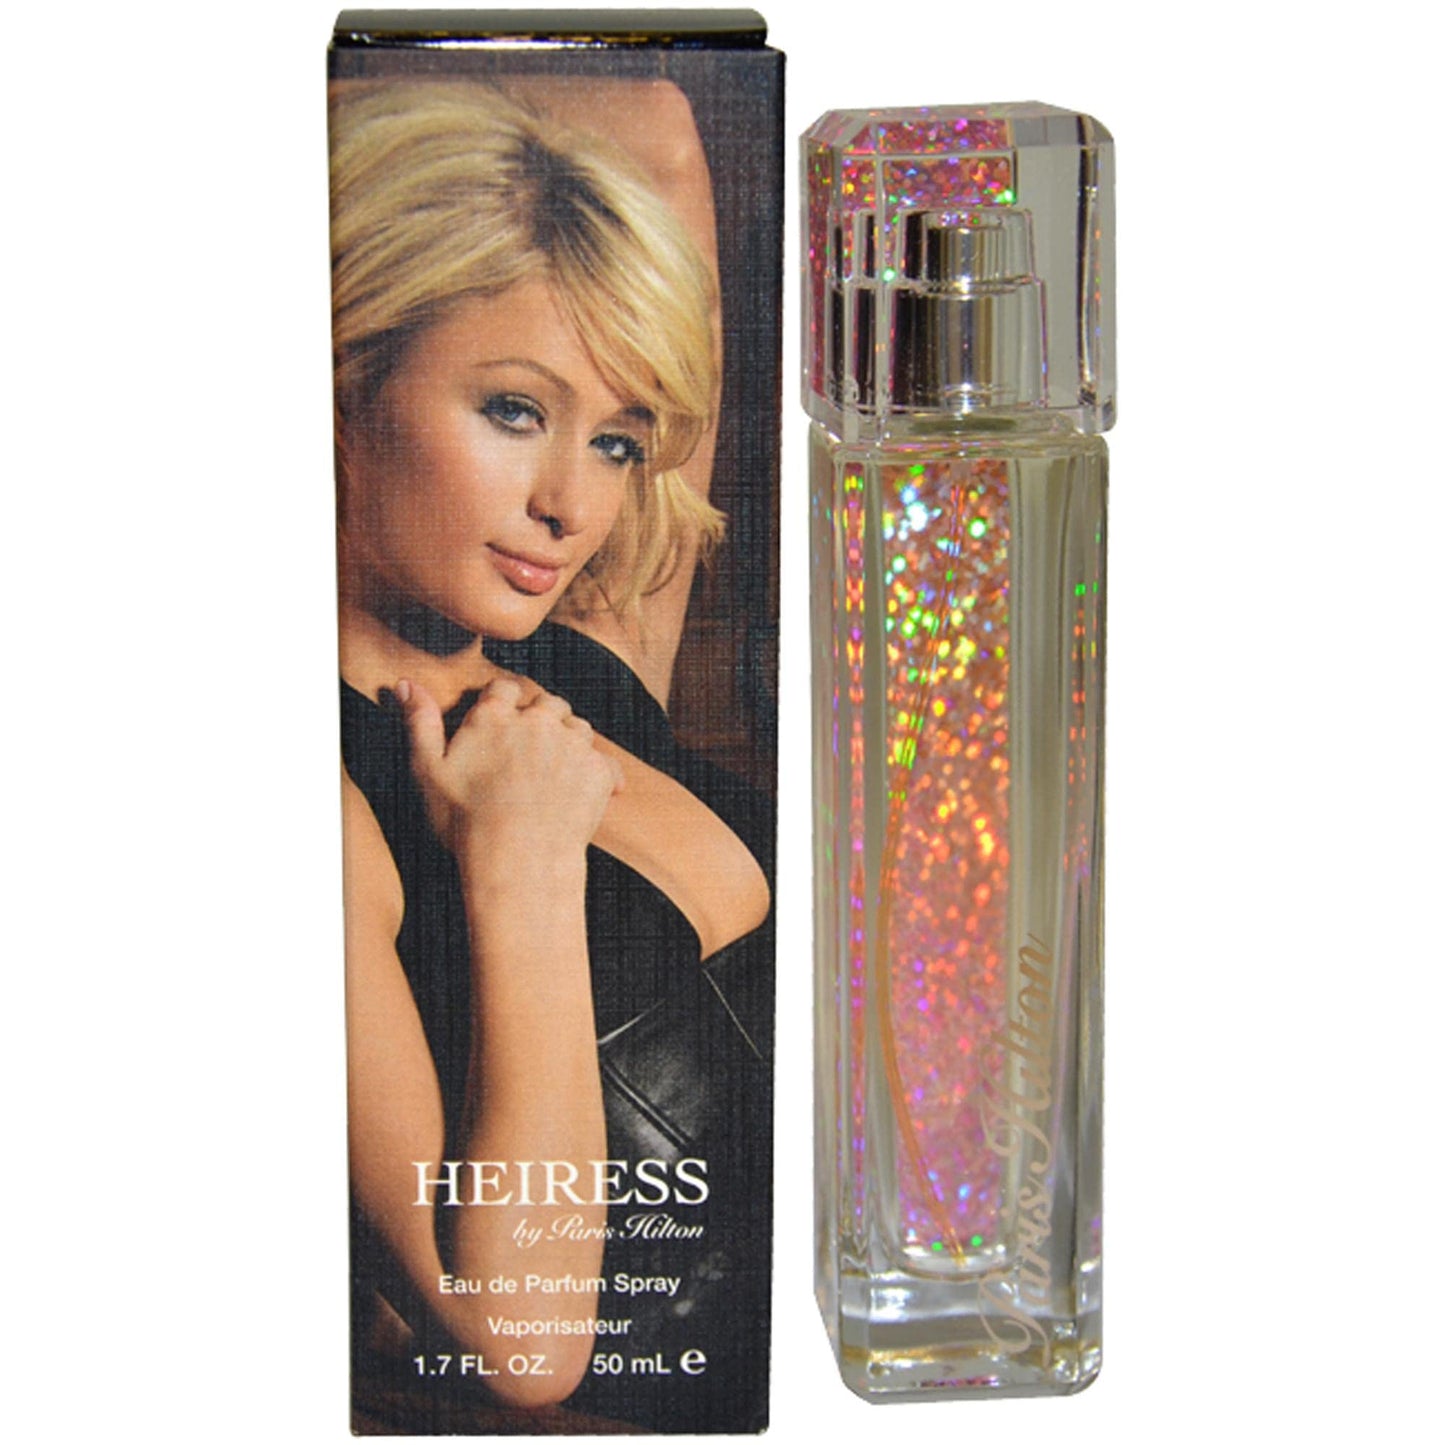 Heiress by Paris Hilton Eau De Parfum for Woman - 100ML